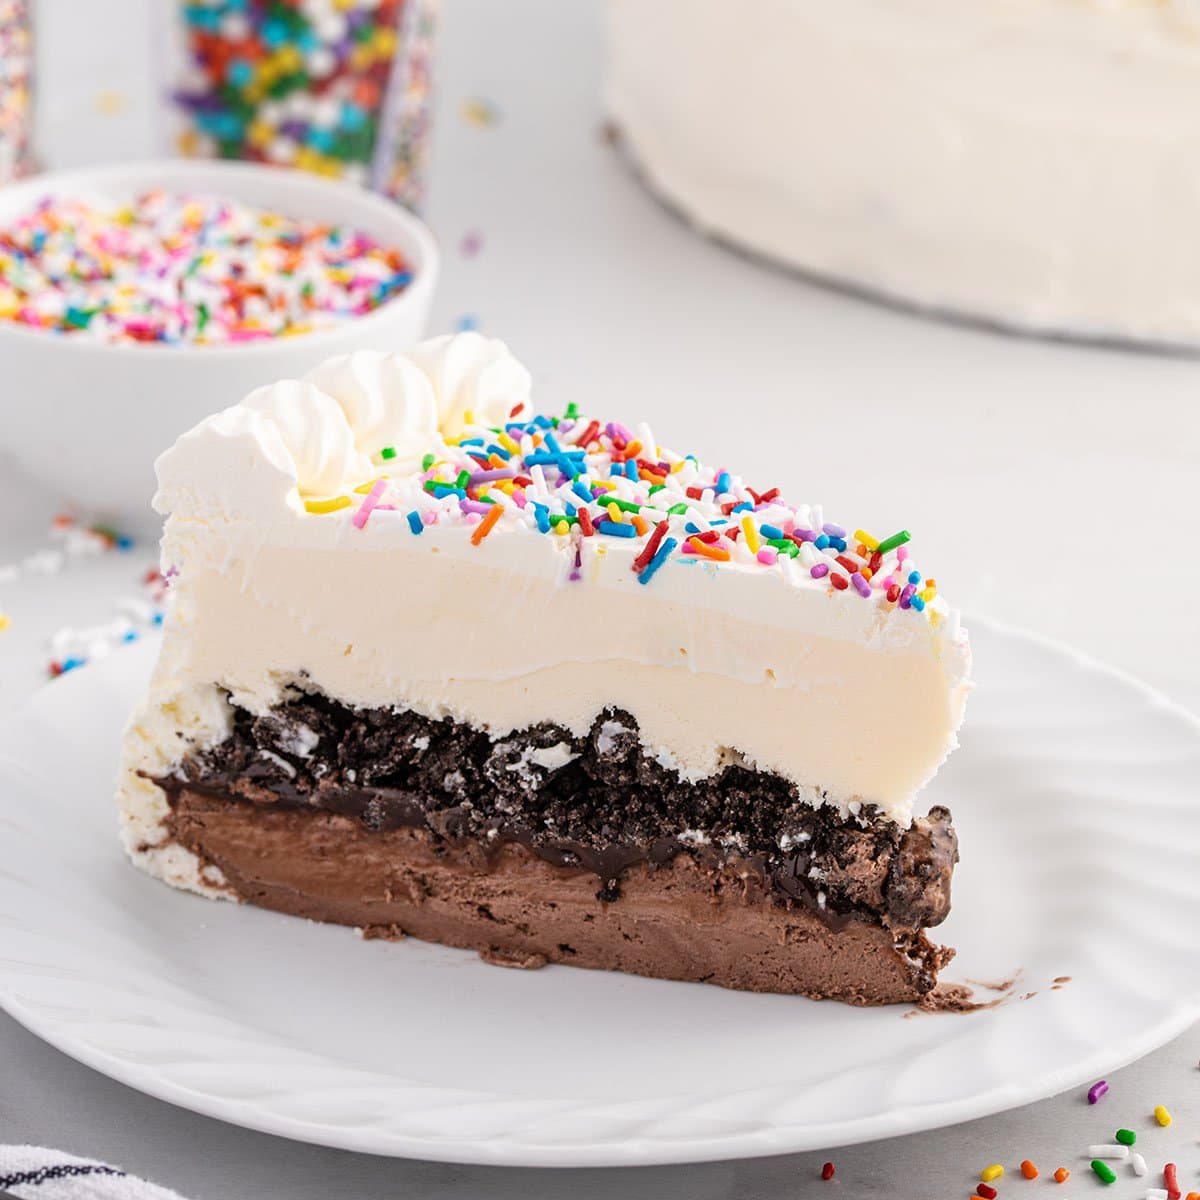 dairy-queen-ice-cream-cake-fudge-recipe-deporecipe-co